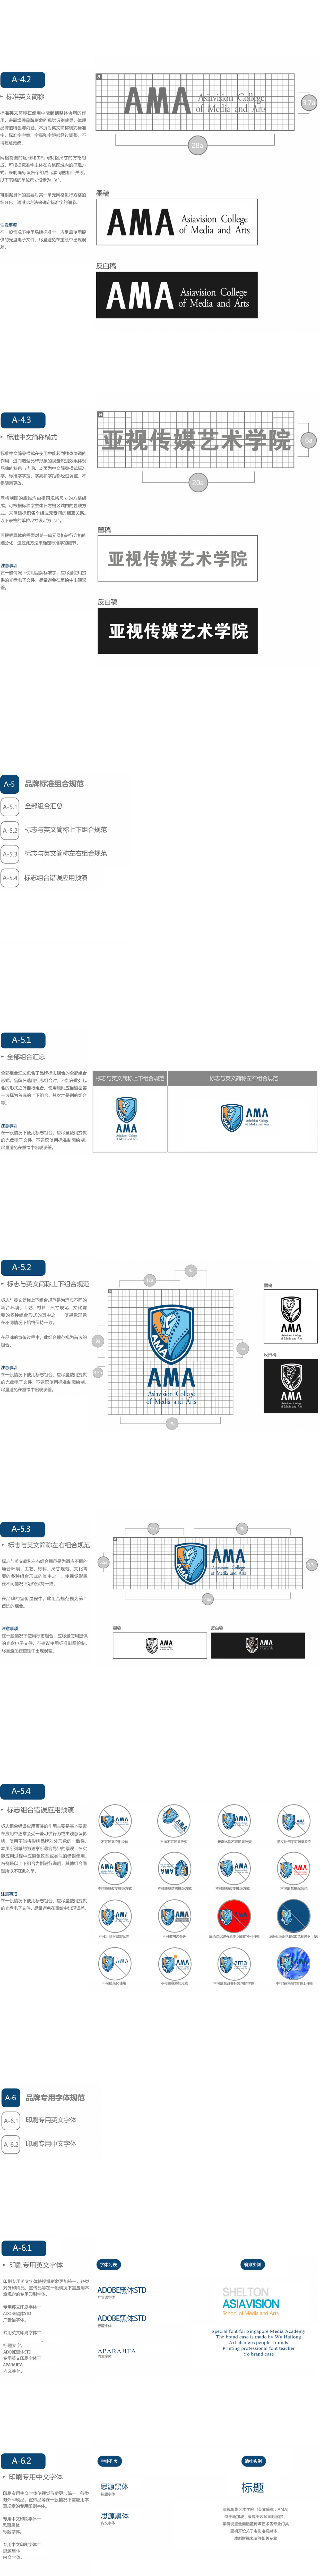 新加坡AMA傳媒藝術學院丨品牌全案-YO圖9